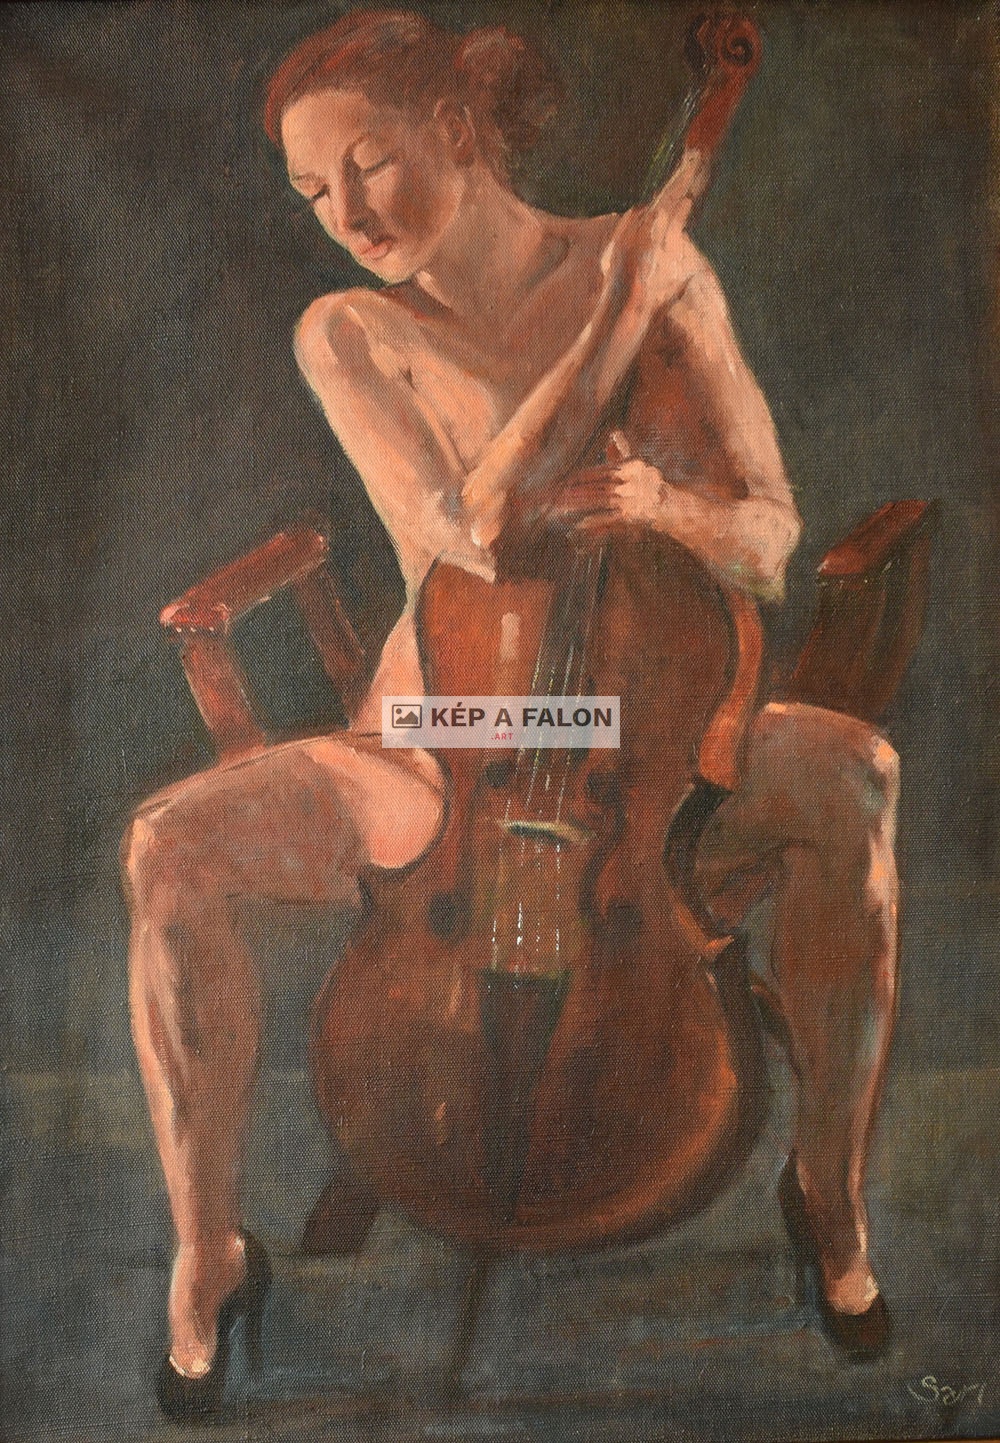 Cellist by: Sari Osman | 2018, olaj festmény